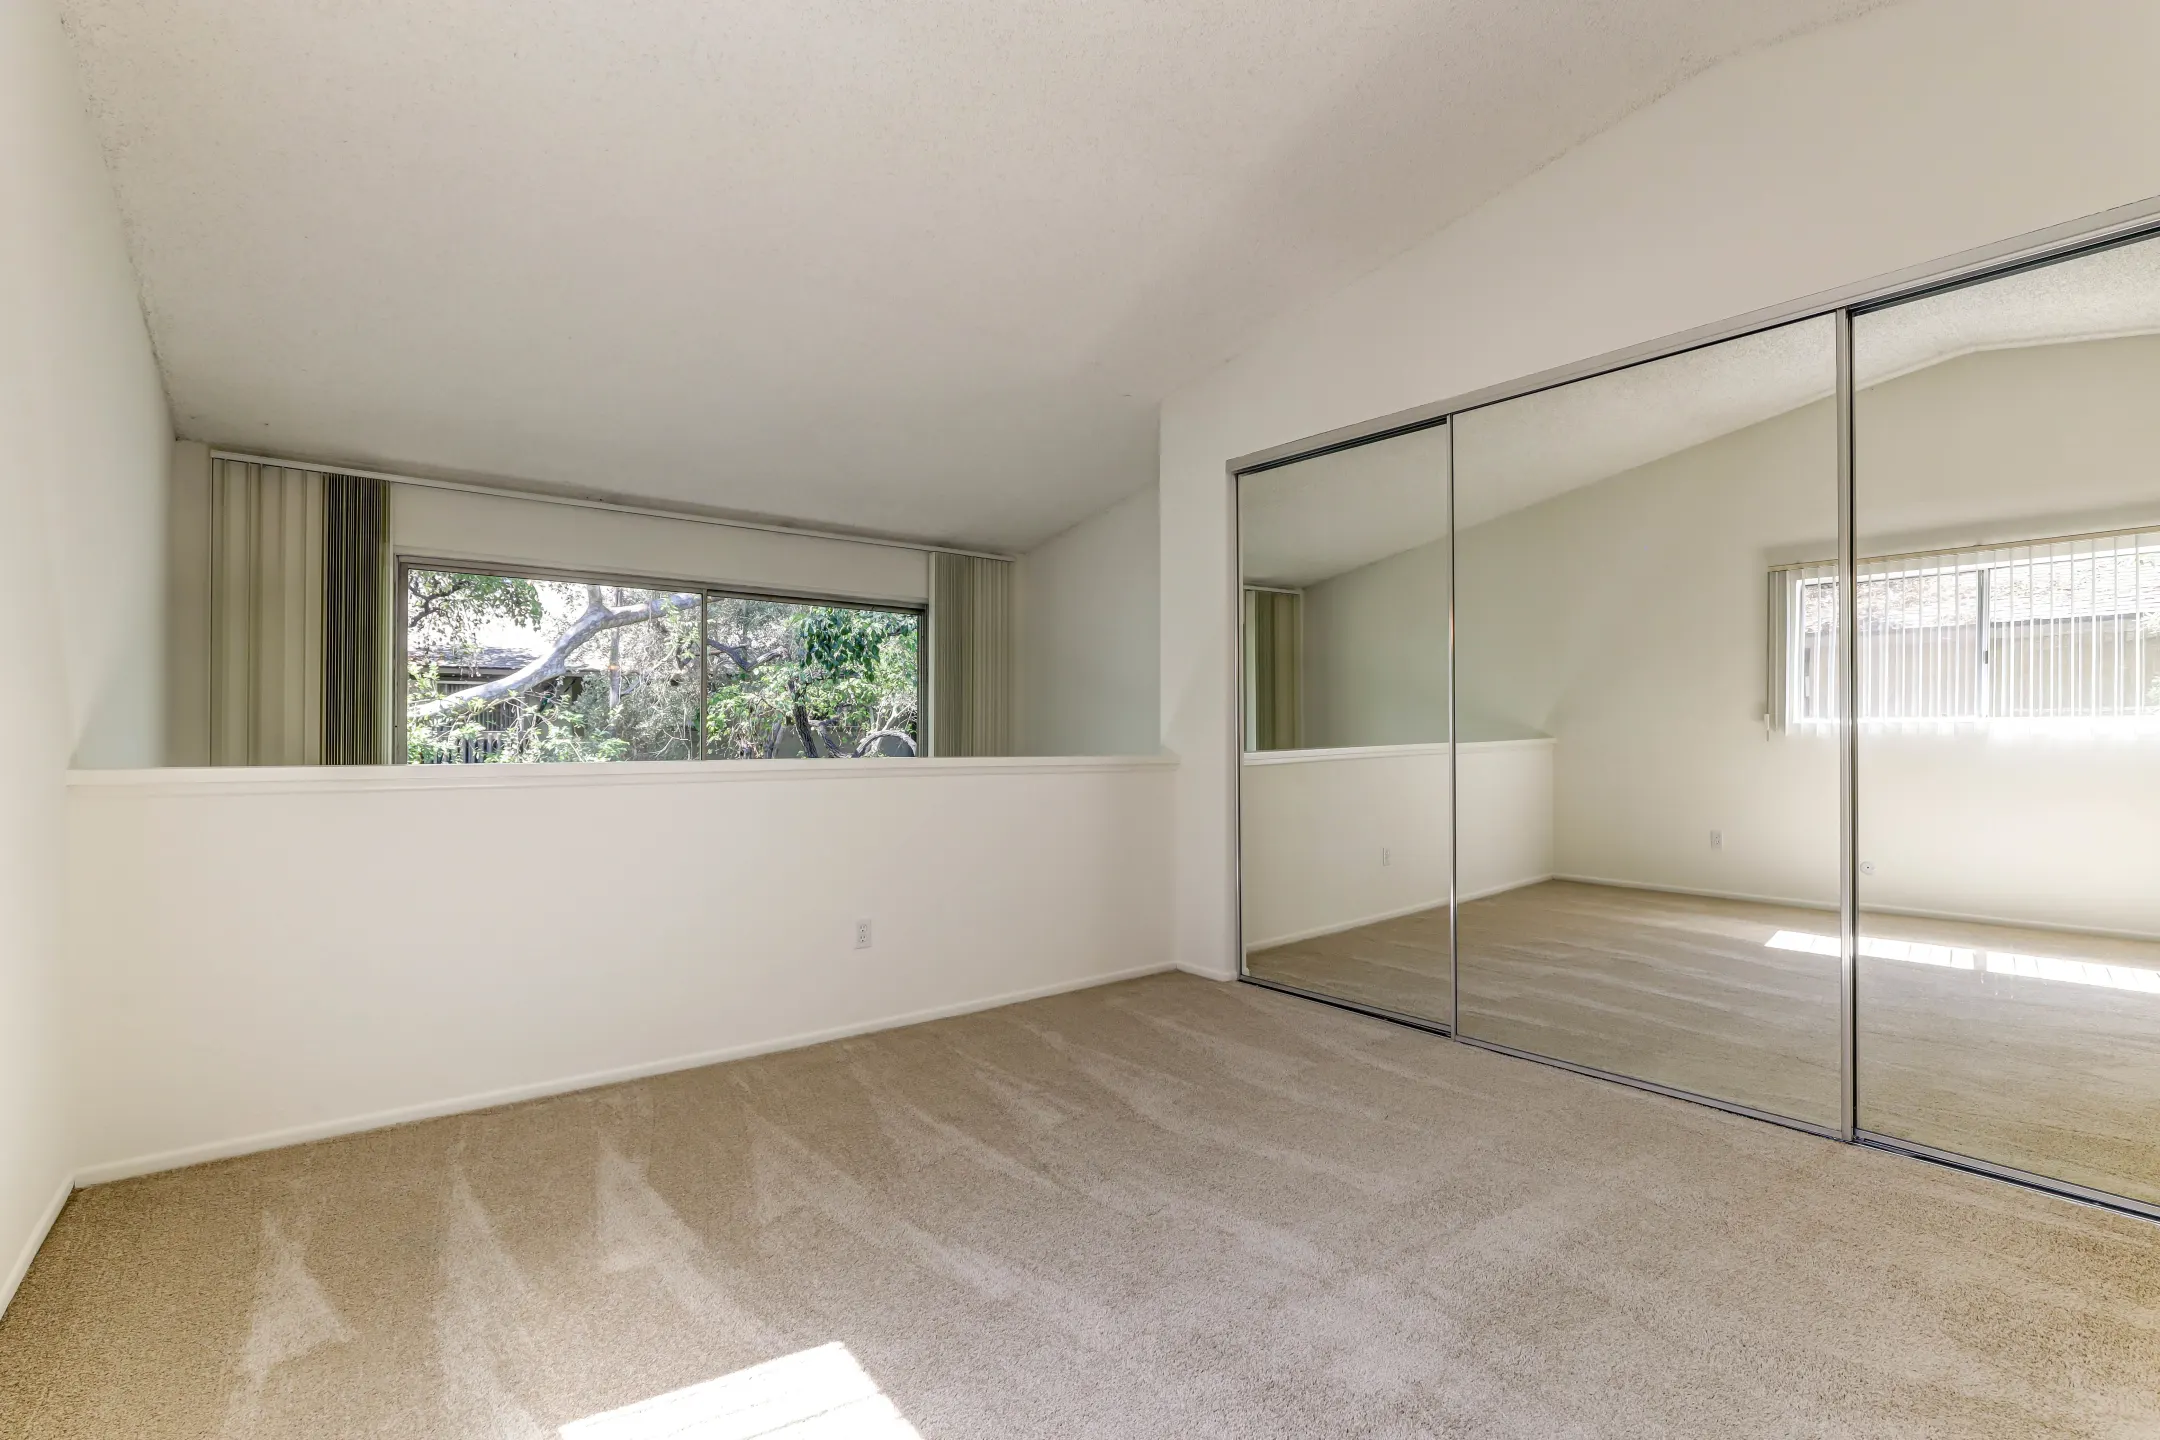 Living Room - The Aspens South Coast - Santa Ana, CA